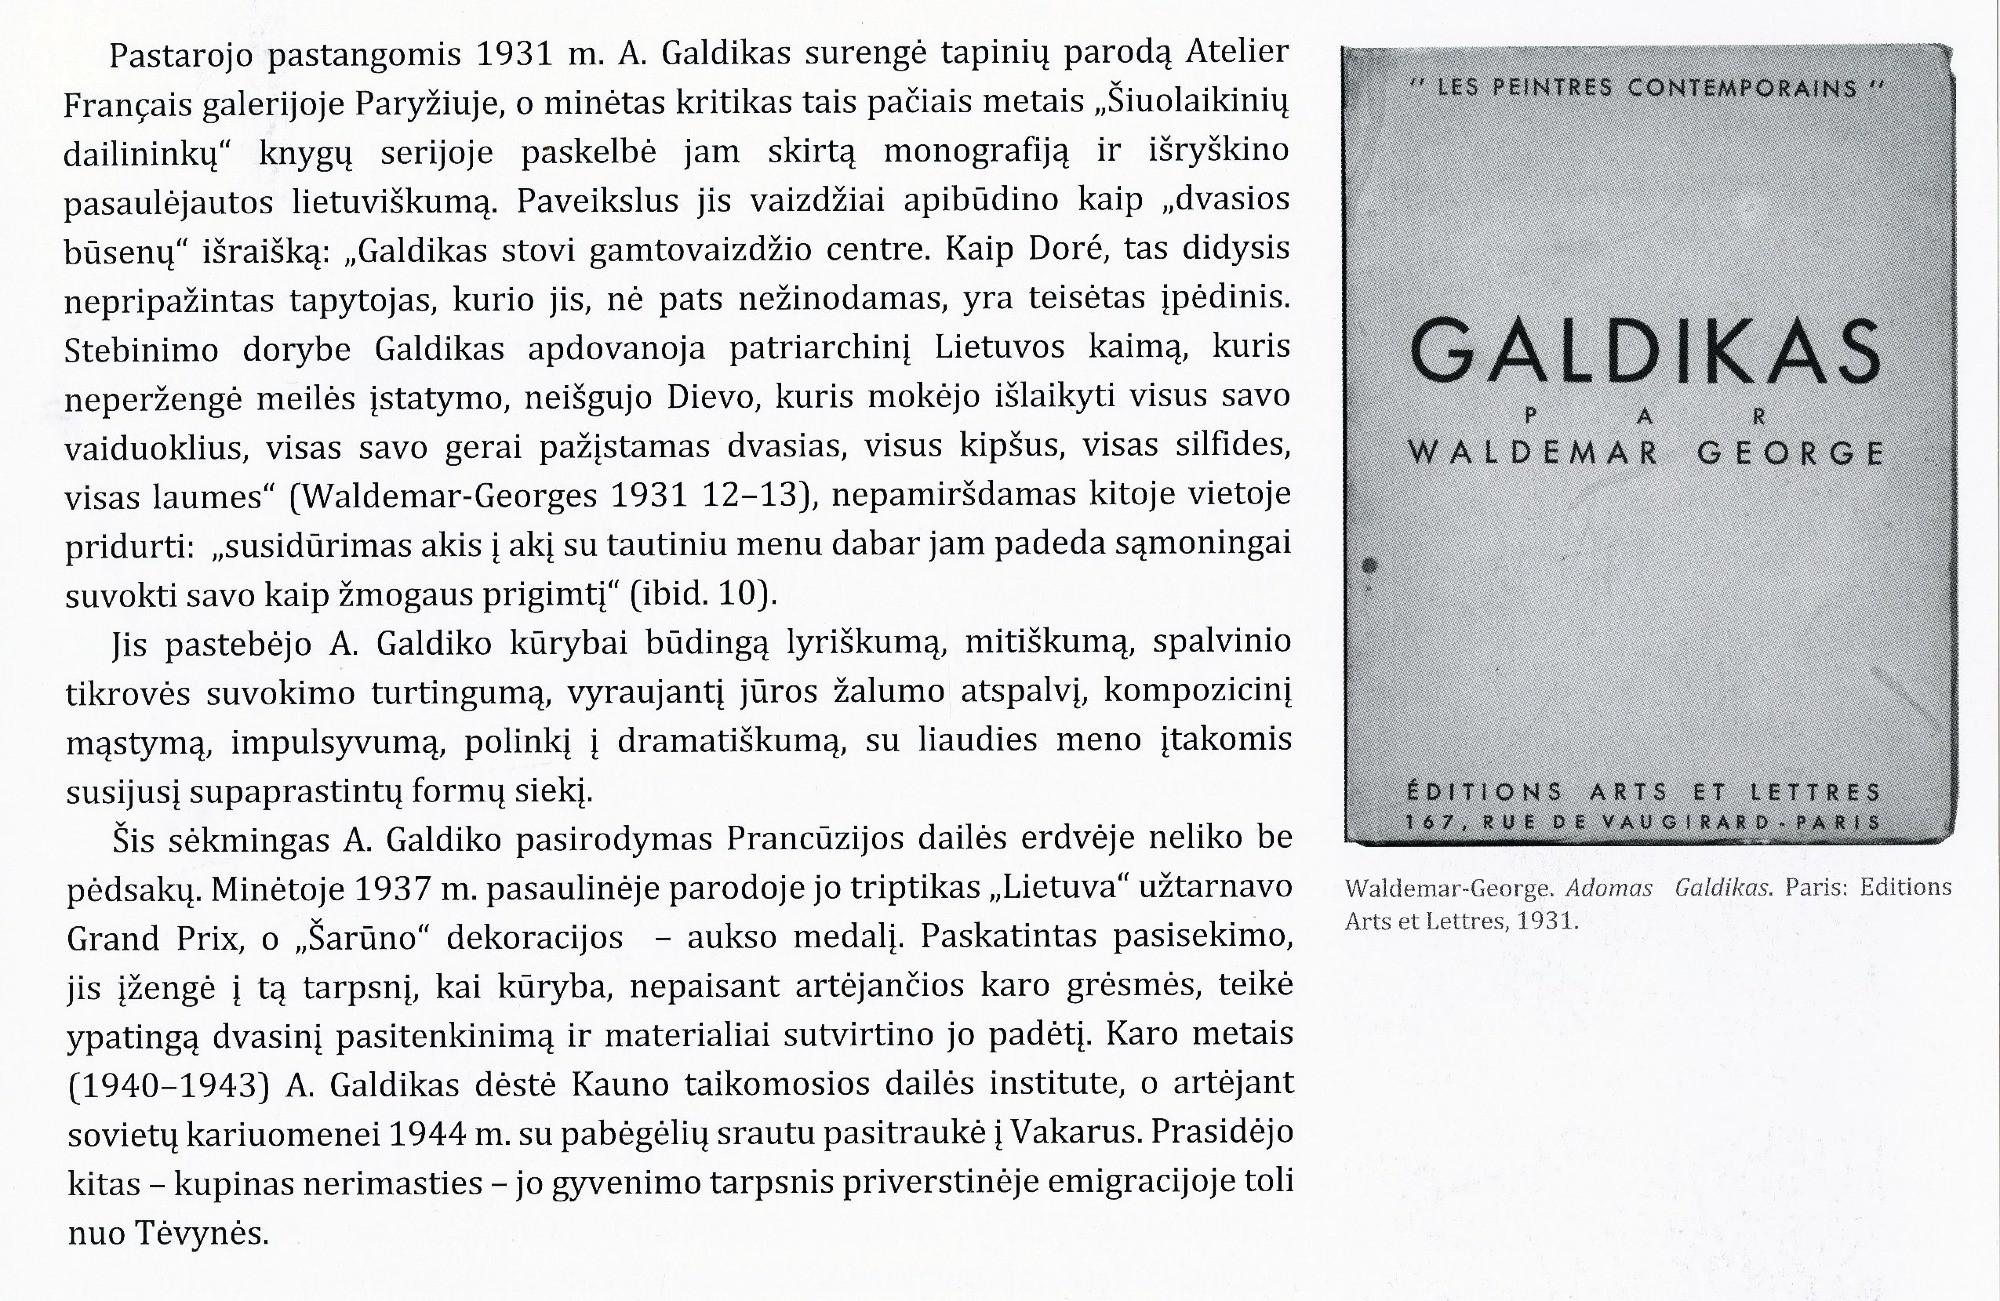 Waldemar George pastangos populiarinant Adomą Galdiką Prancūzijoje